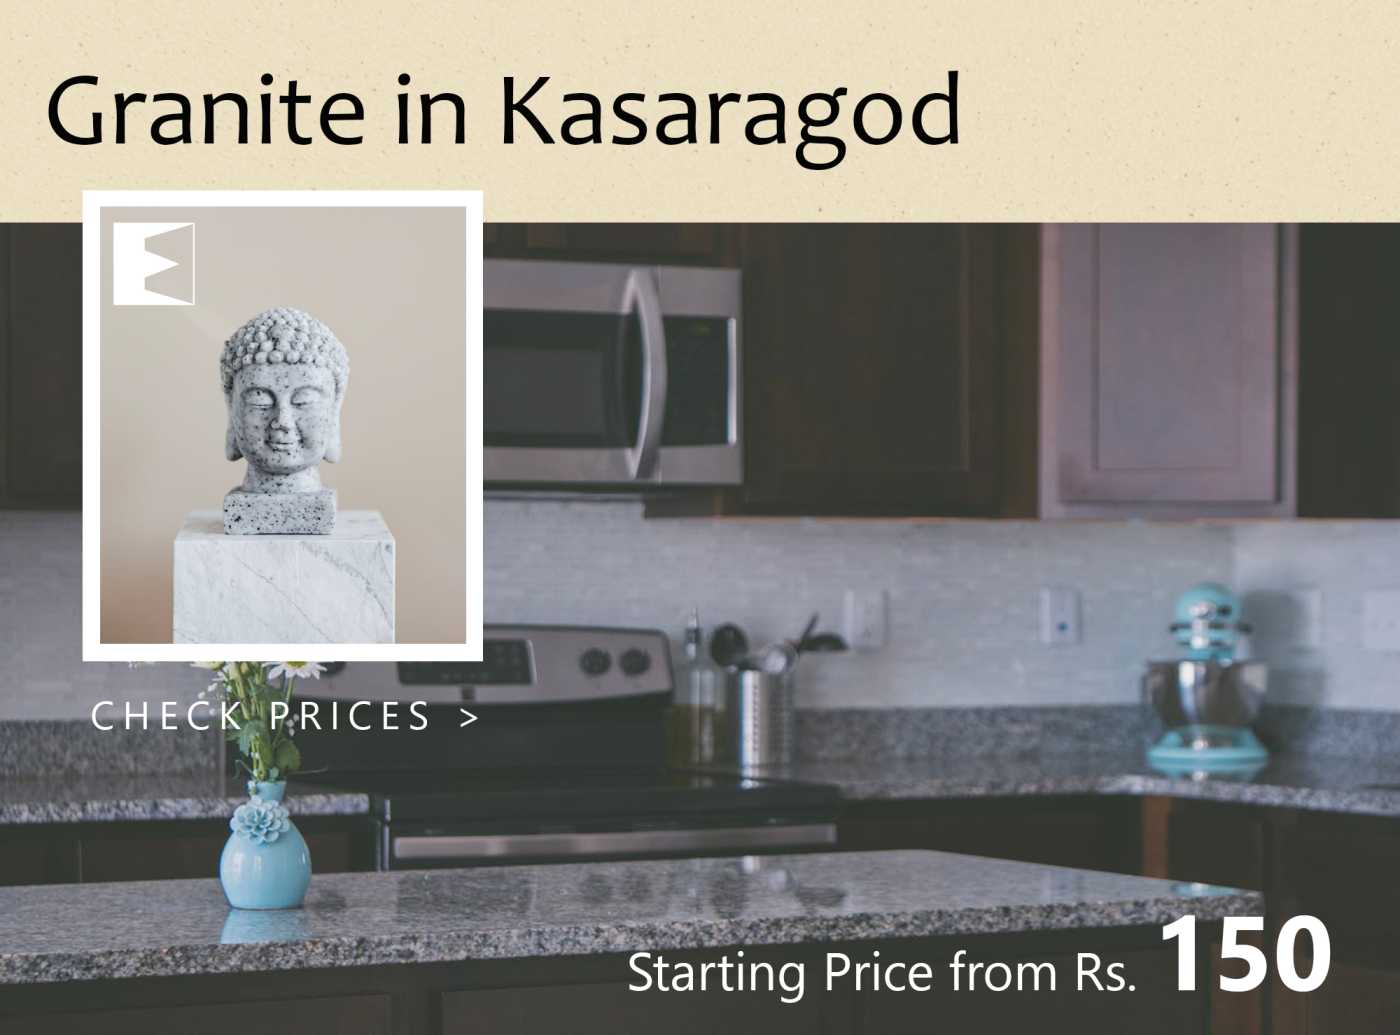 Granite Price in Kasaragod | Starting from 150 INR